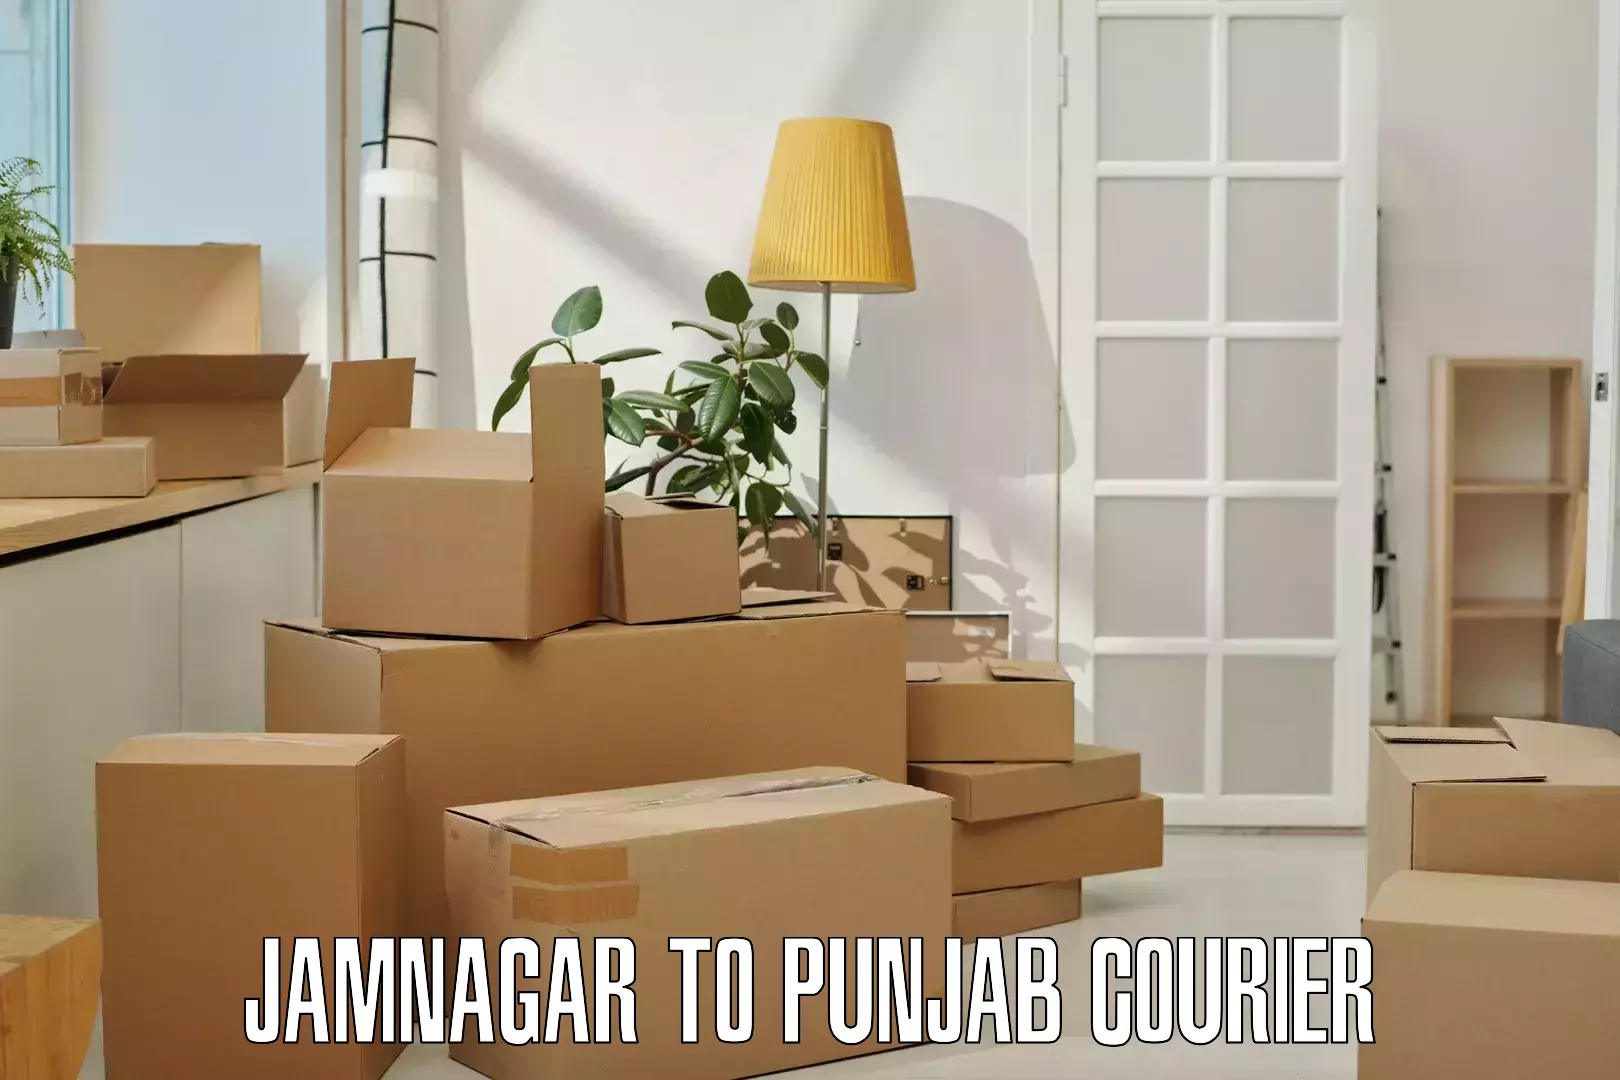 Express delivery capabilities Jamnagar to Punjab